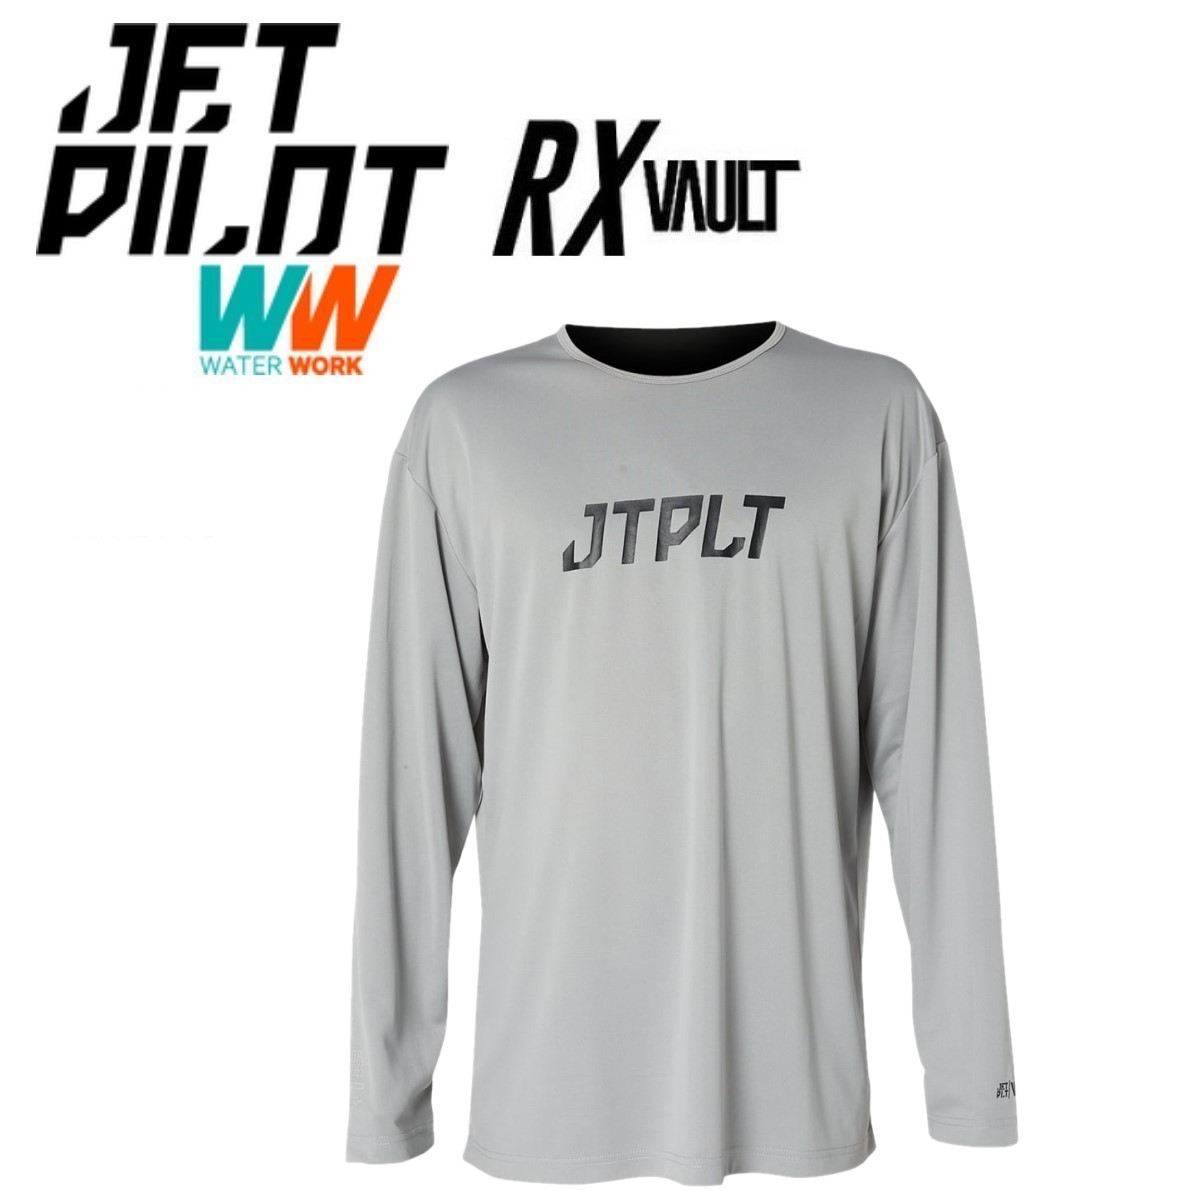 あなたにおすすめの商品 2023 JETPILOT ジェットパイロット ラッシュガード L グレー JA22616 ジャージ レース ハイドロ L/S ボルト RX 送料無料 長袖 Mサイズ